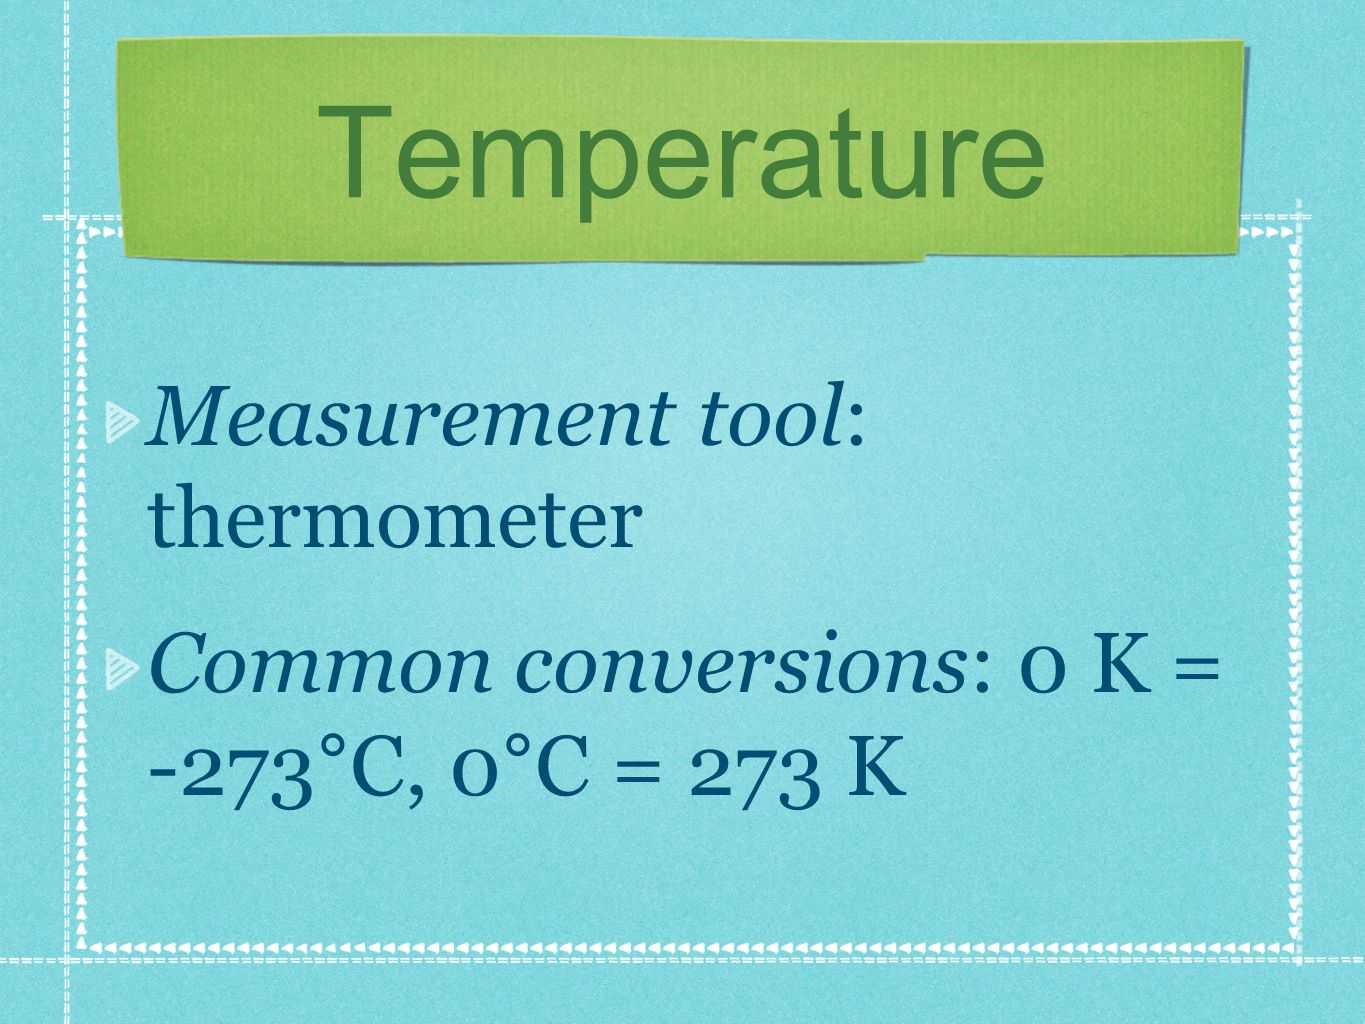 Temperature Measurement tool: thermometer Common conversions: 0 K = -273°C, 0°C = 273 K